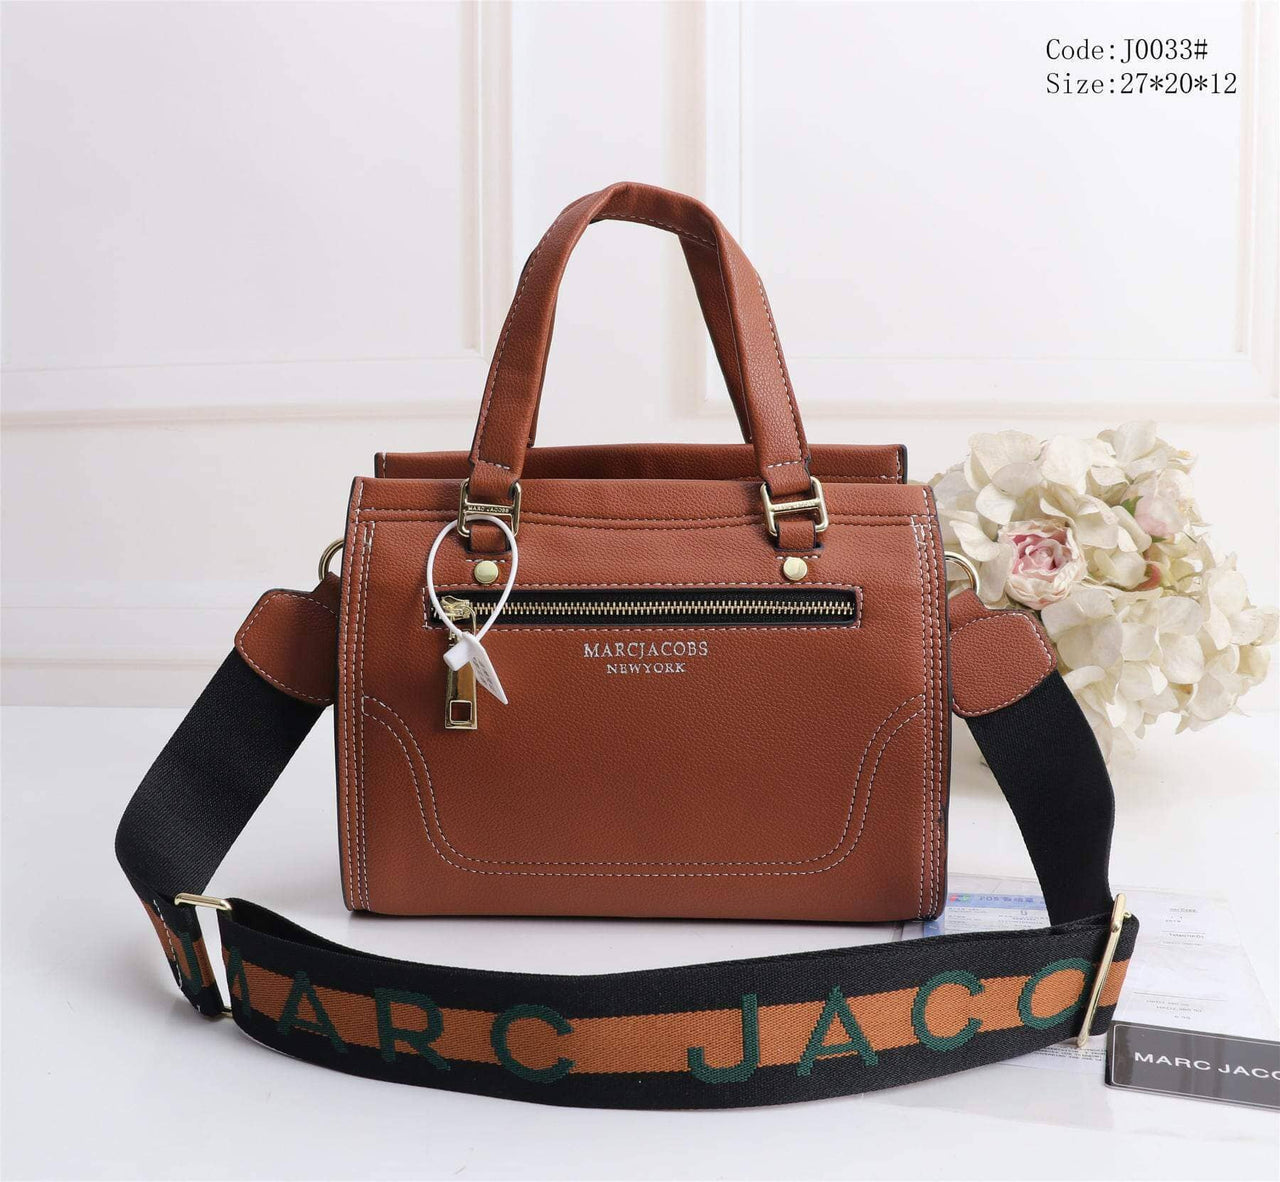 MJ0033 Stylish Handbag Sling Bag